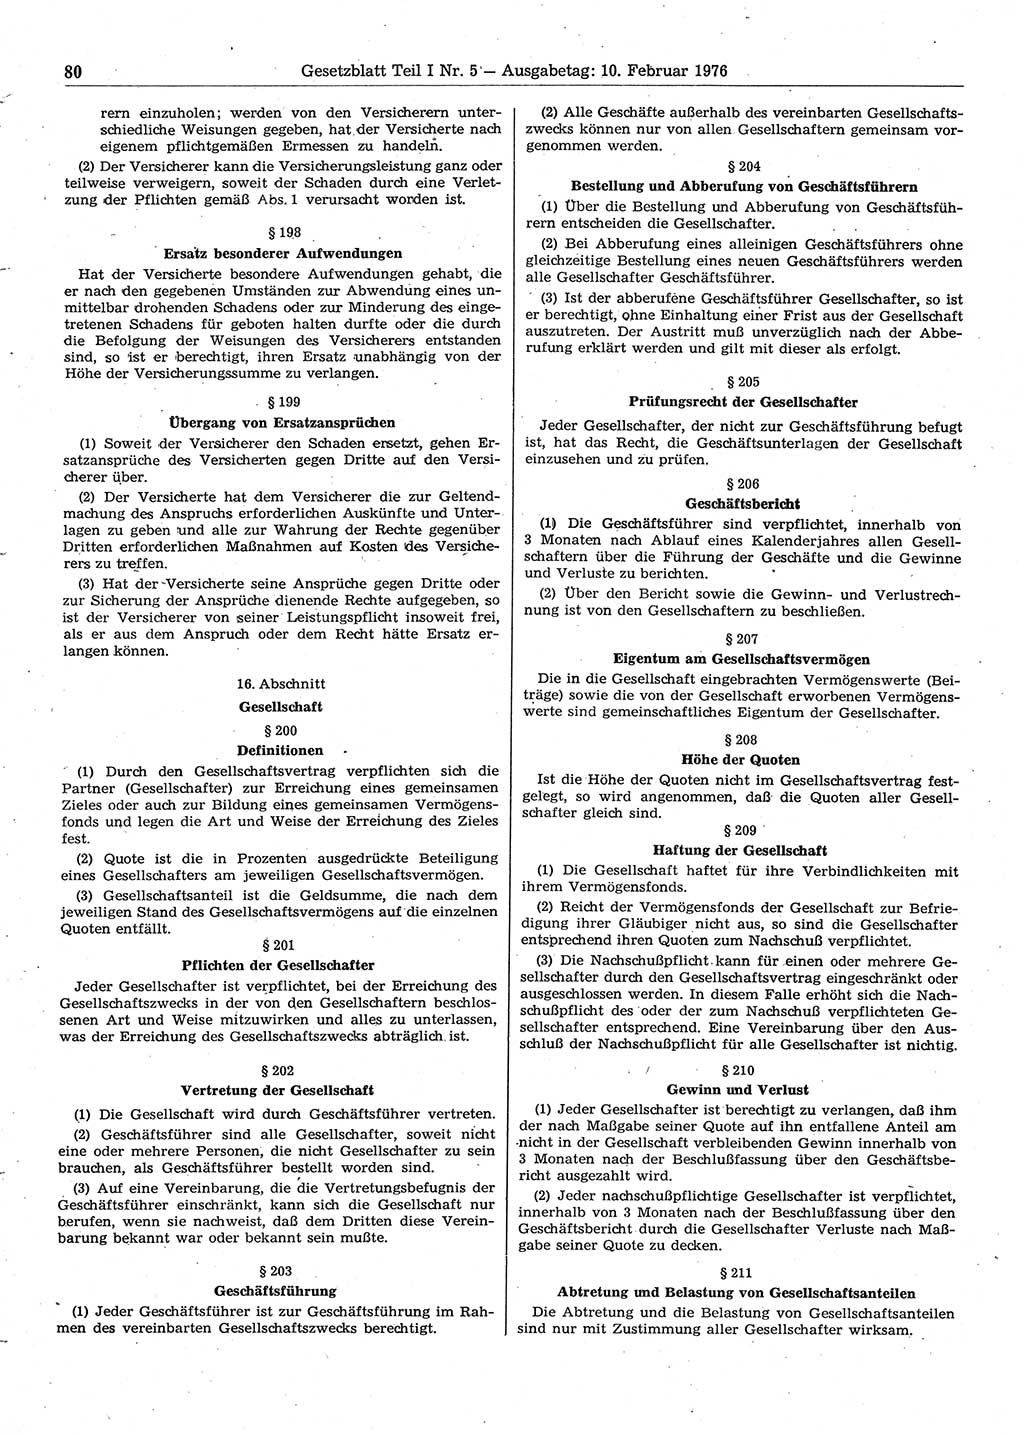 Gesetzblatt (GBl.) der Deutschen Demokratischen Republik (DDR) Teil Ⅰ 1976, Seite 80 (GBl. DDR Ⅰ 1976, S. 80)